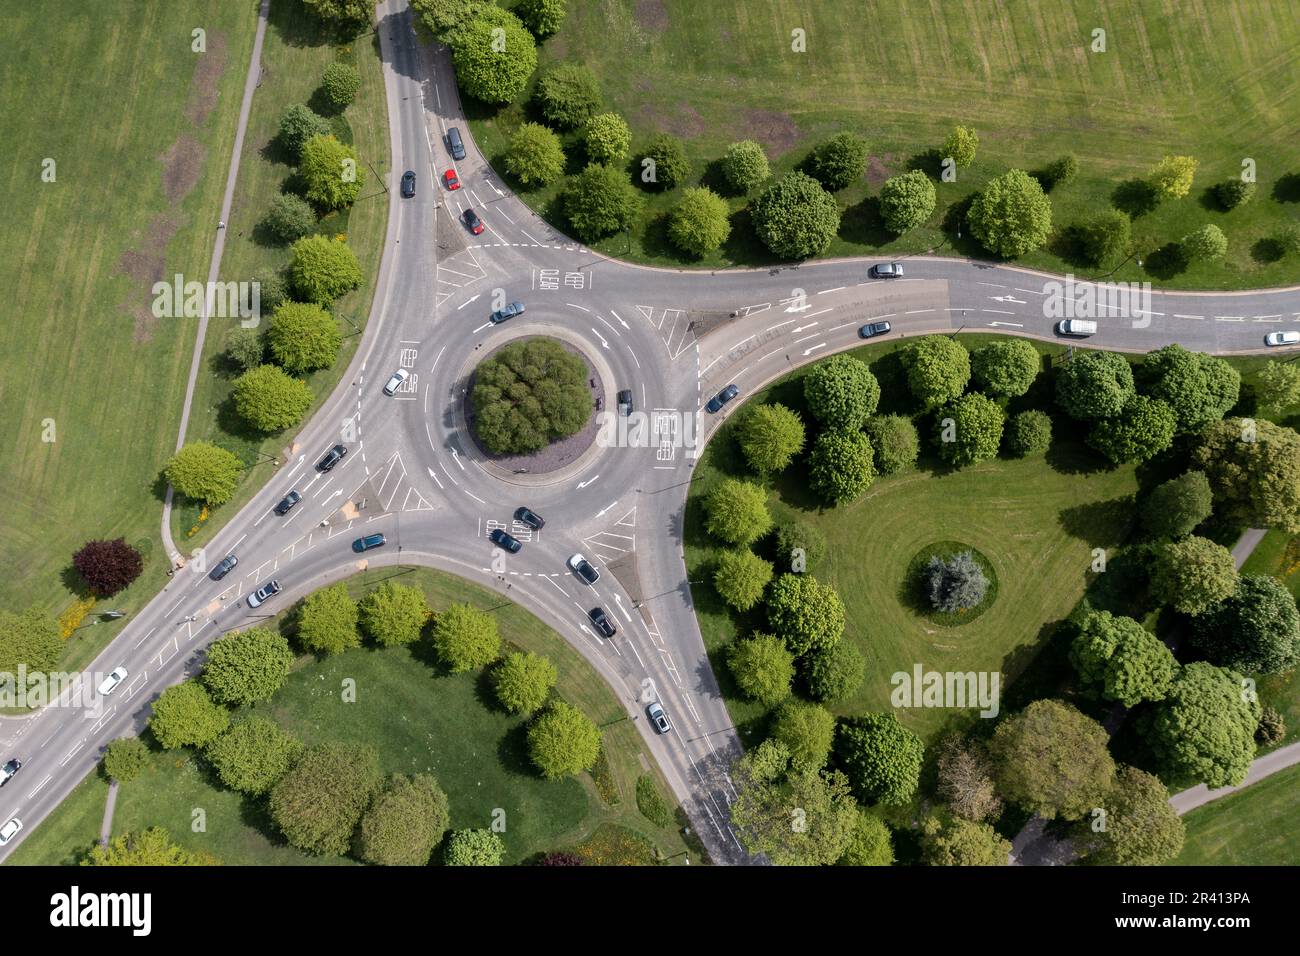 Vue aérienne directement au-dessus d'un rond-point à Harrogate, dans le North Yorkshire, avec rues bordées d'arbres et circulation en mouvement Banque D'Images